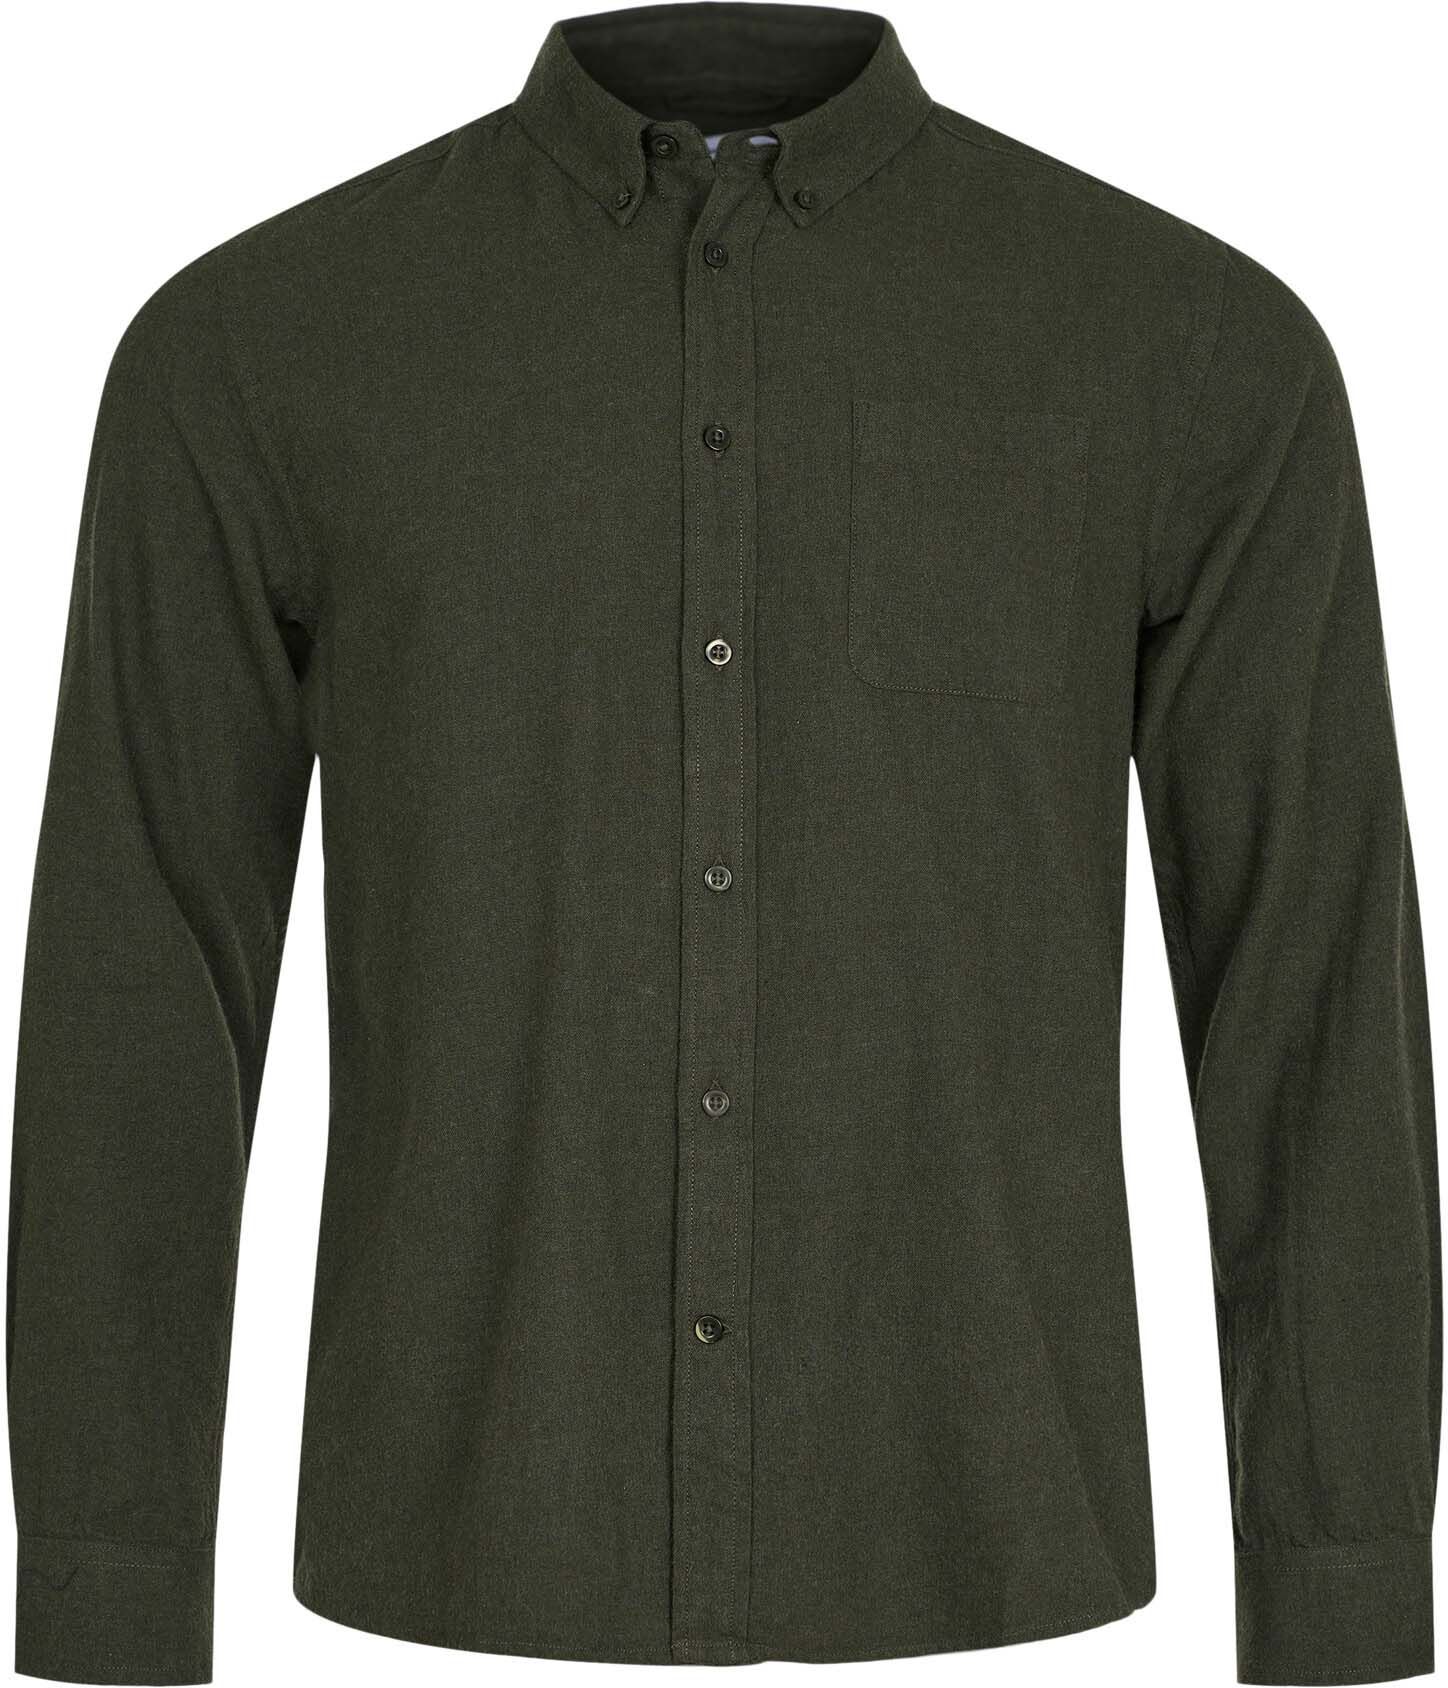 KnowledgeCotton Apparel Shirt Dark Green Dark Green size L